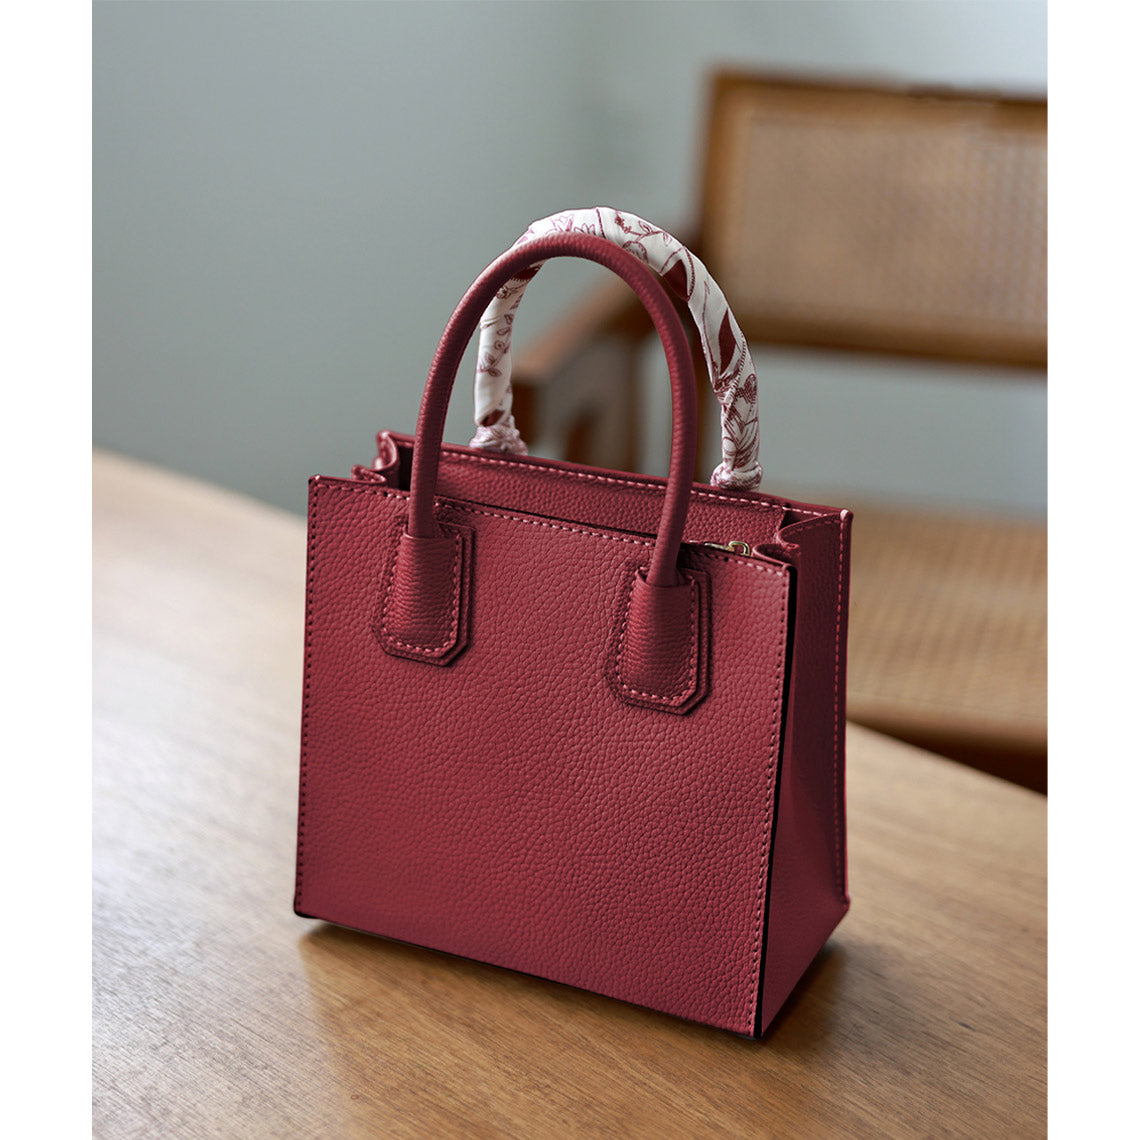 POPSEWING® Top Grain Leather Mini Tote Handbag DIY Kit